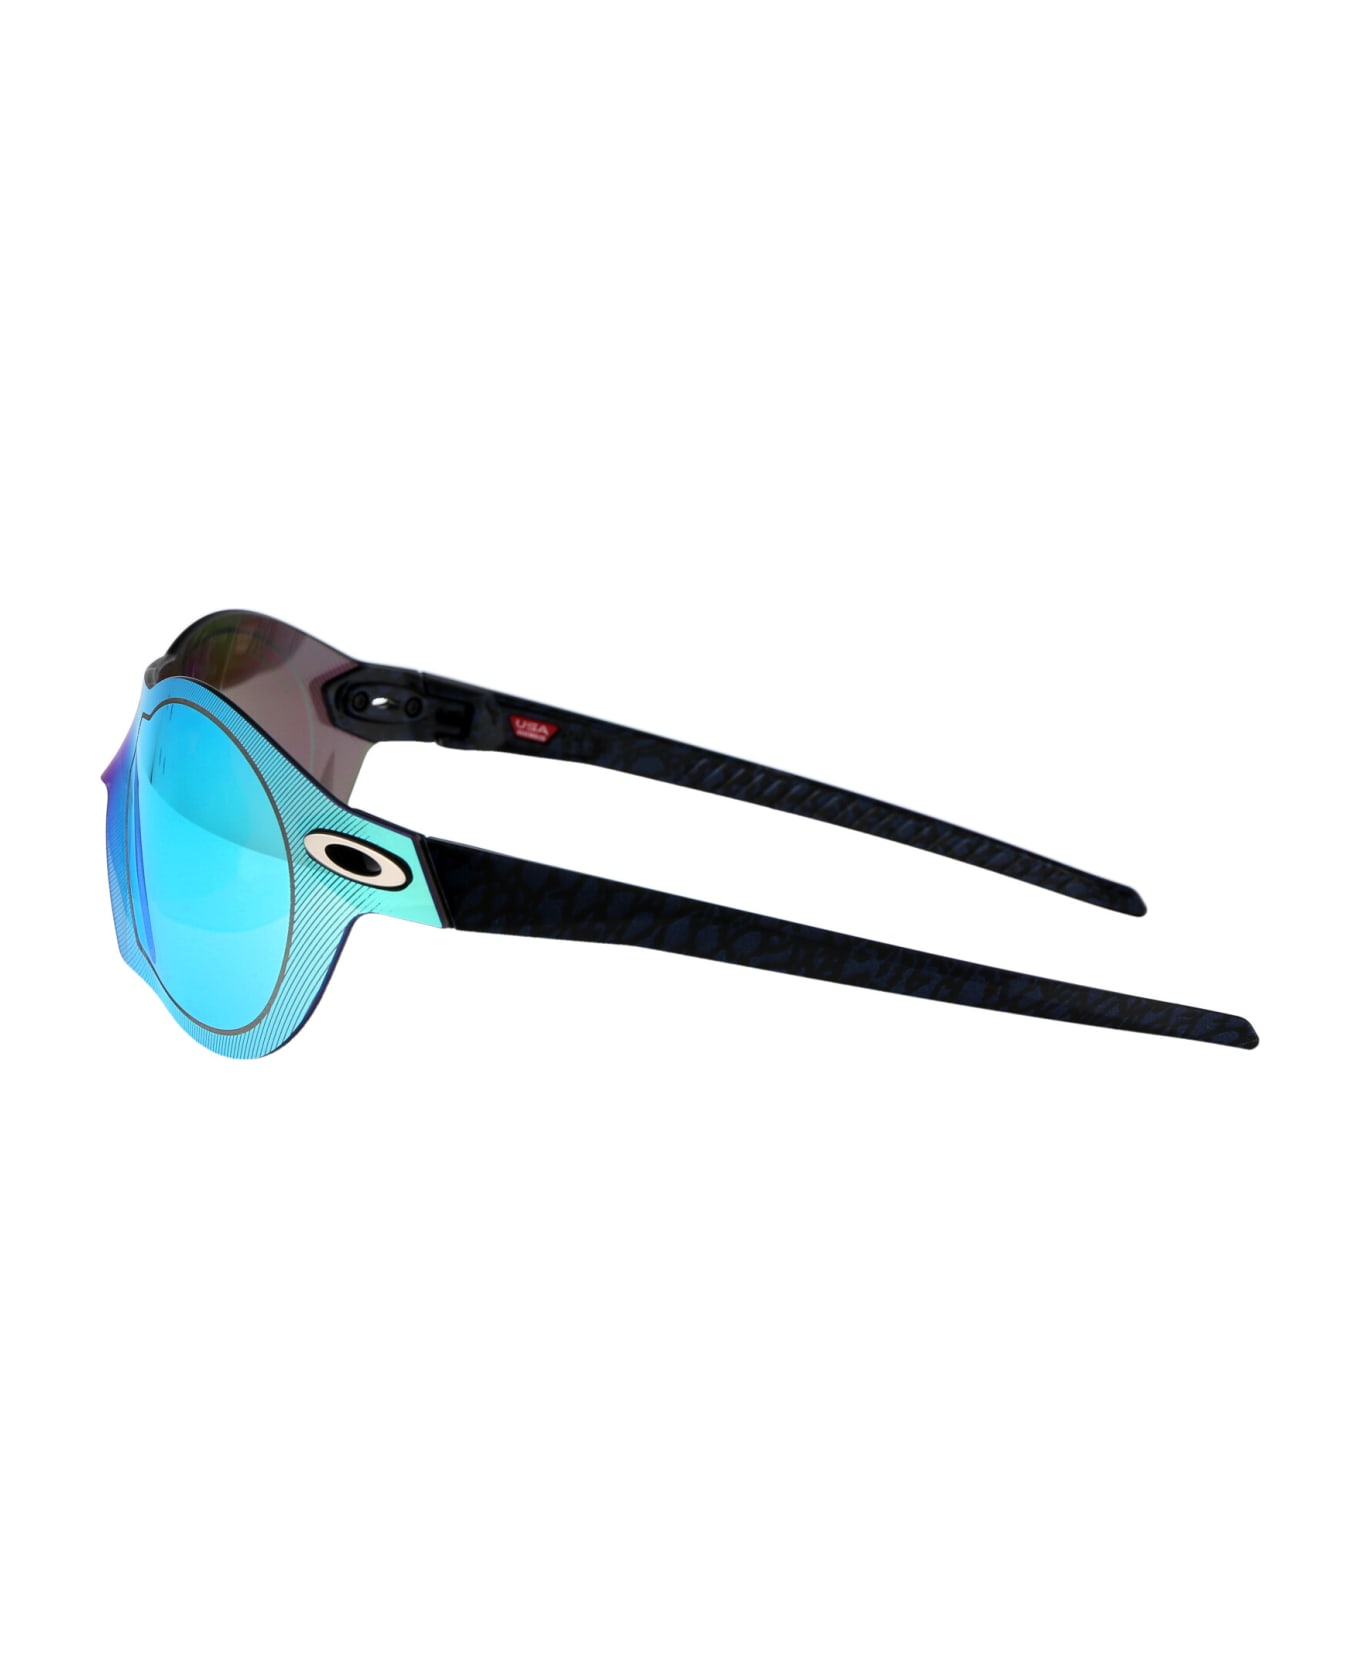 Oakley Re:subzero Sunglasses